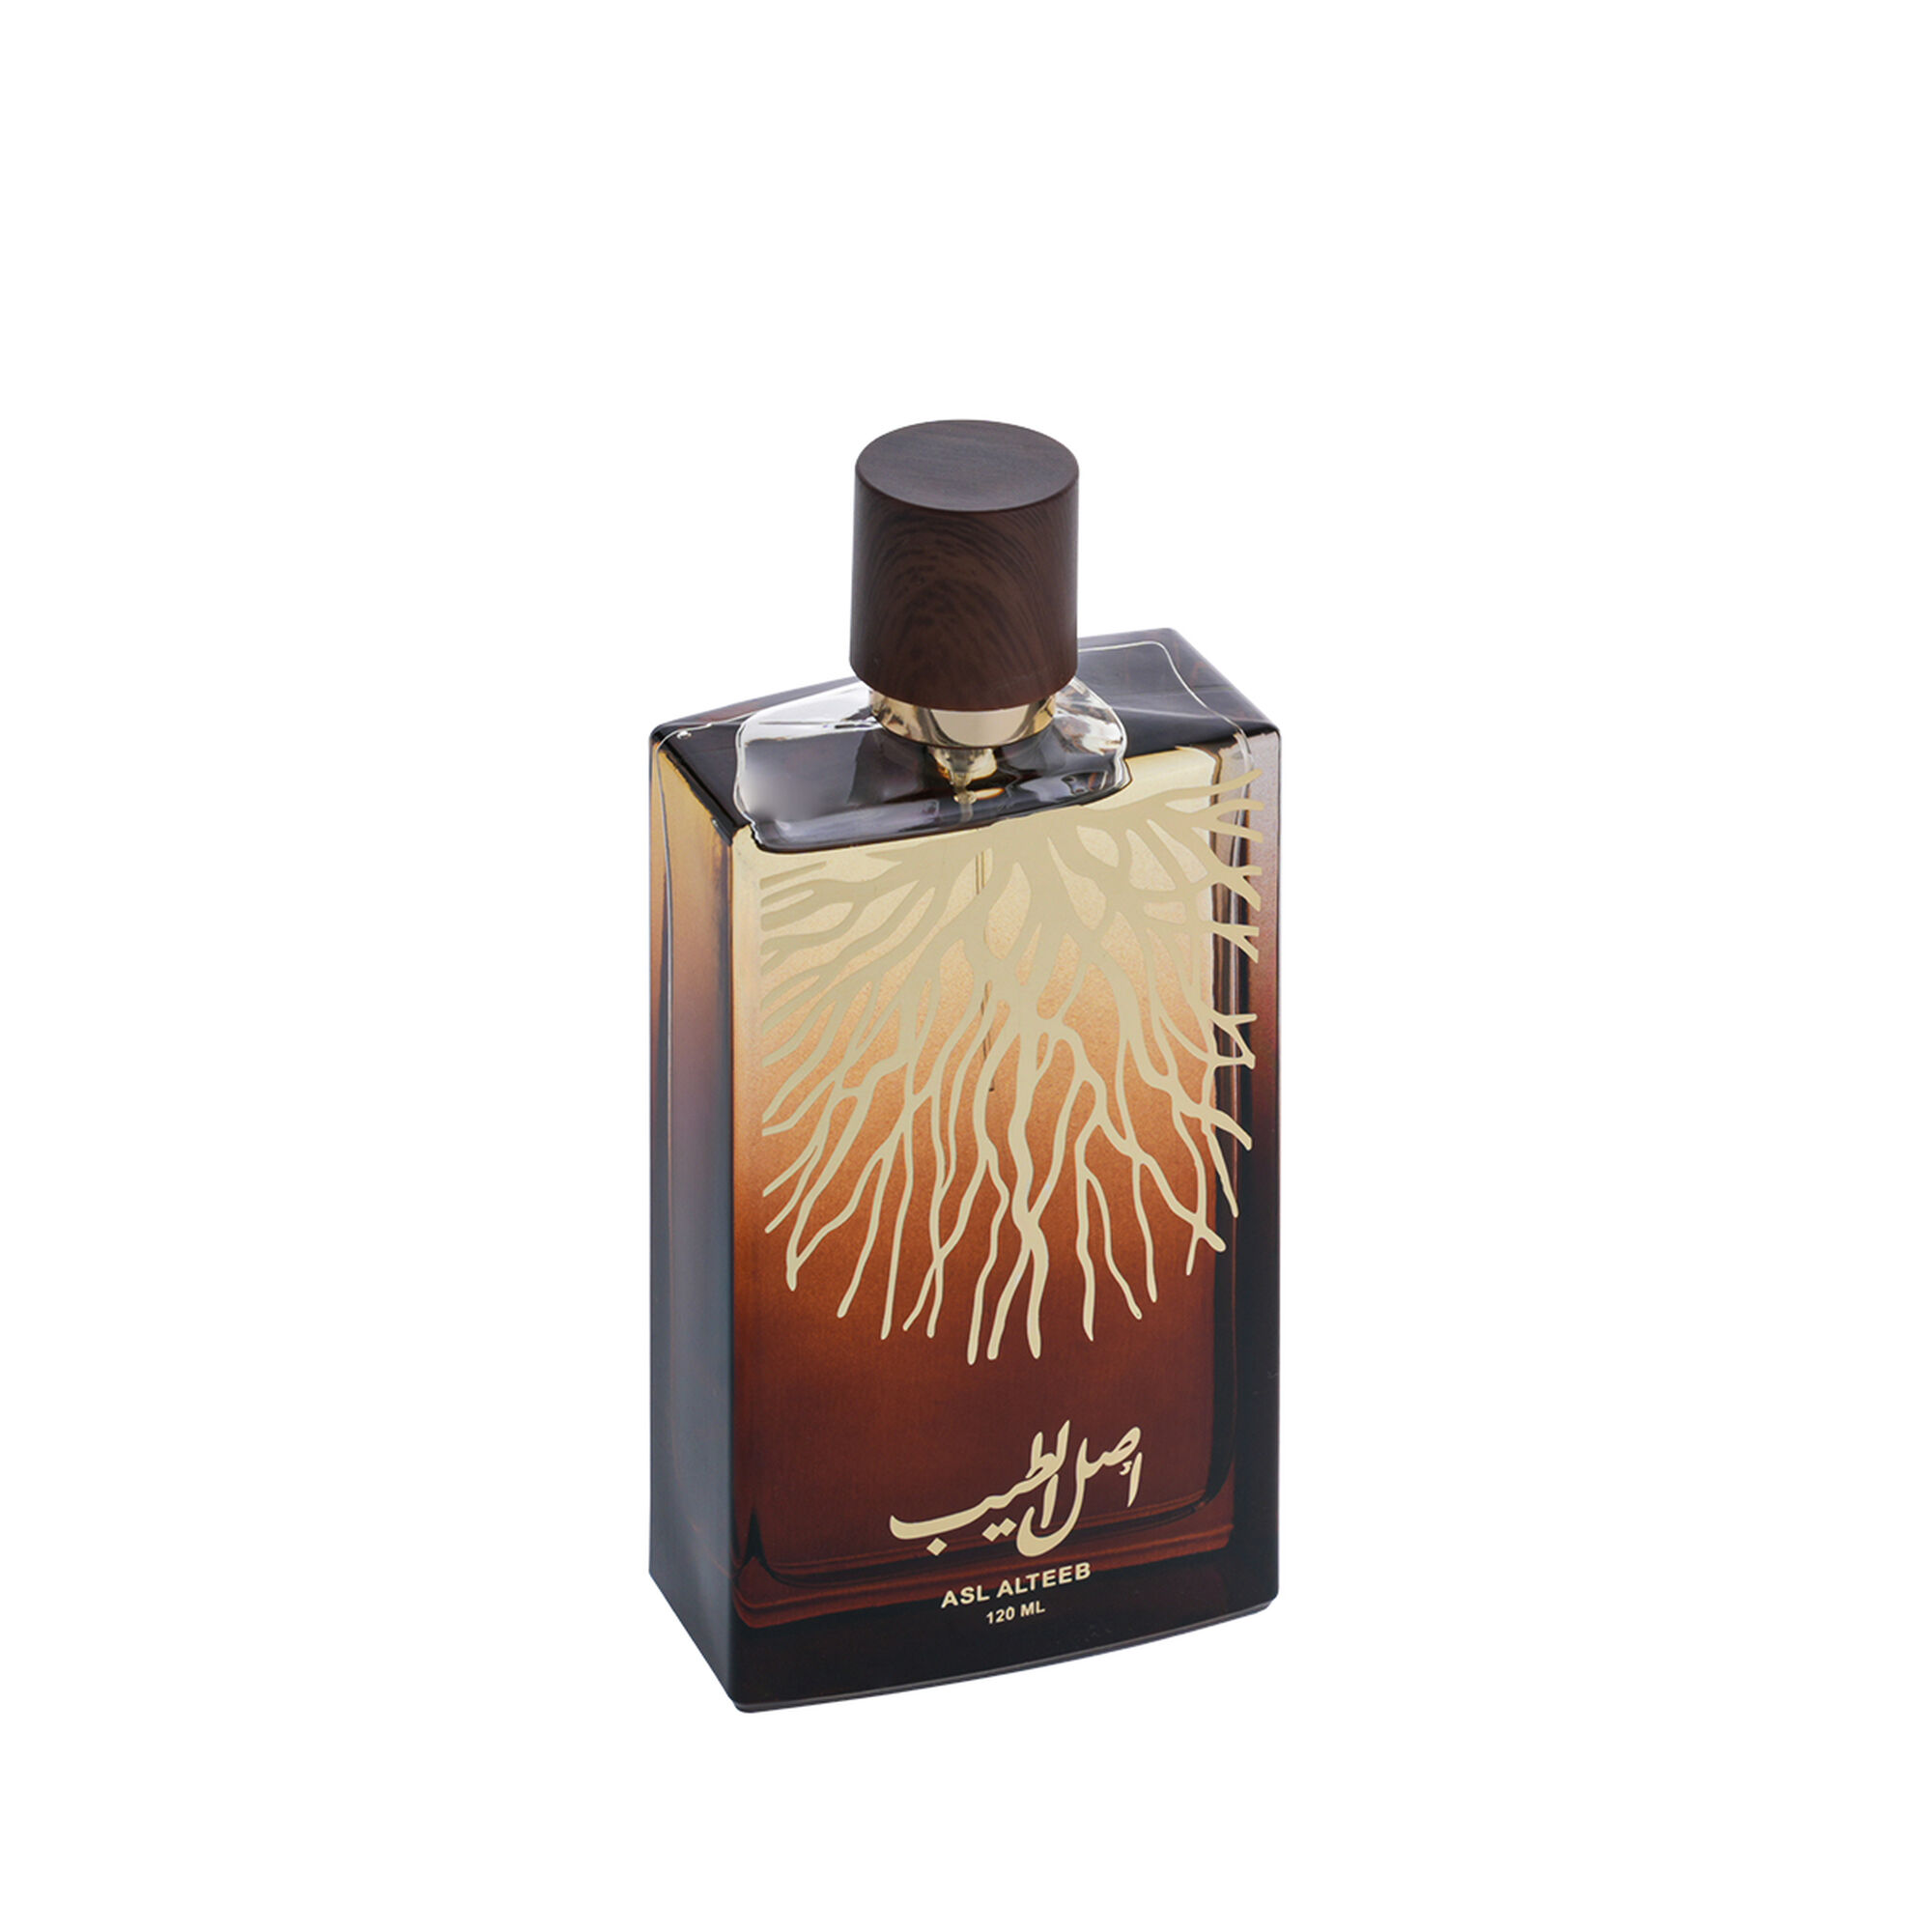 Asl Al-Teeb perfume  120 ml